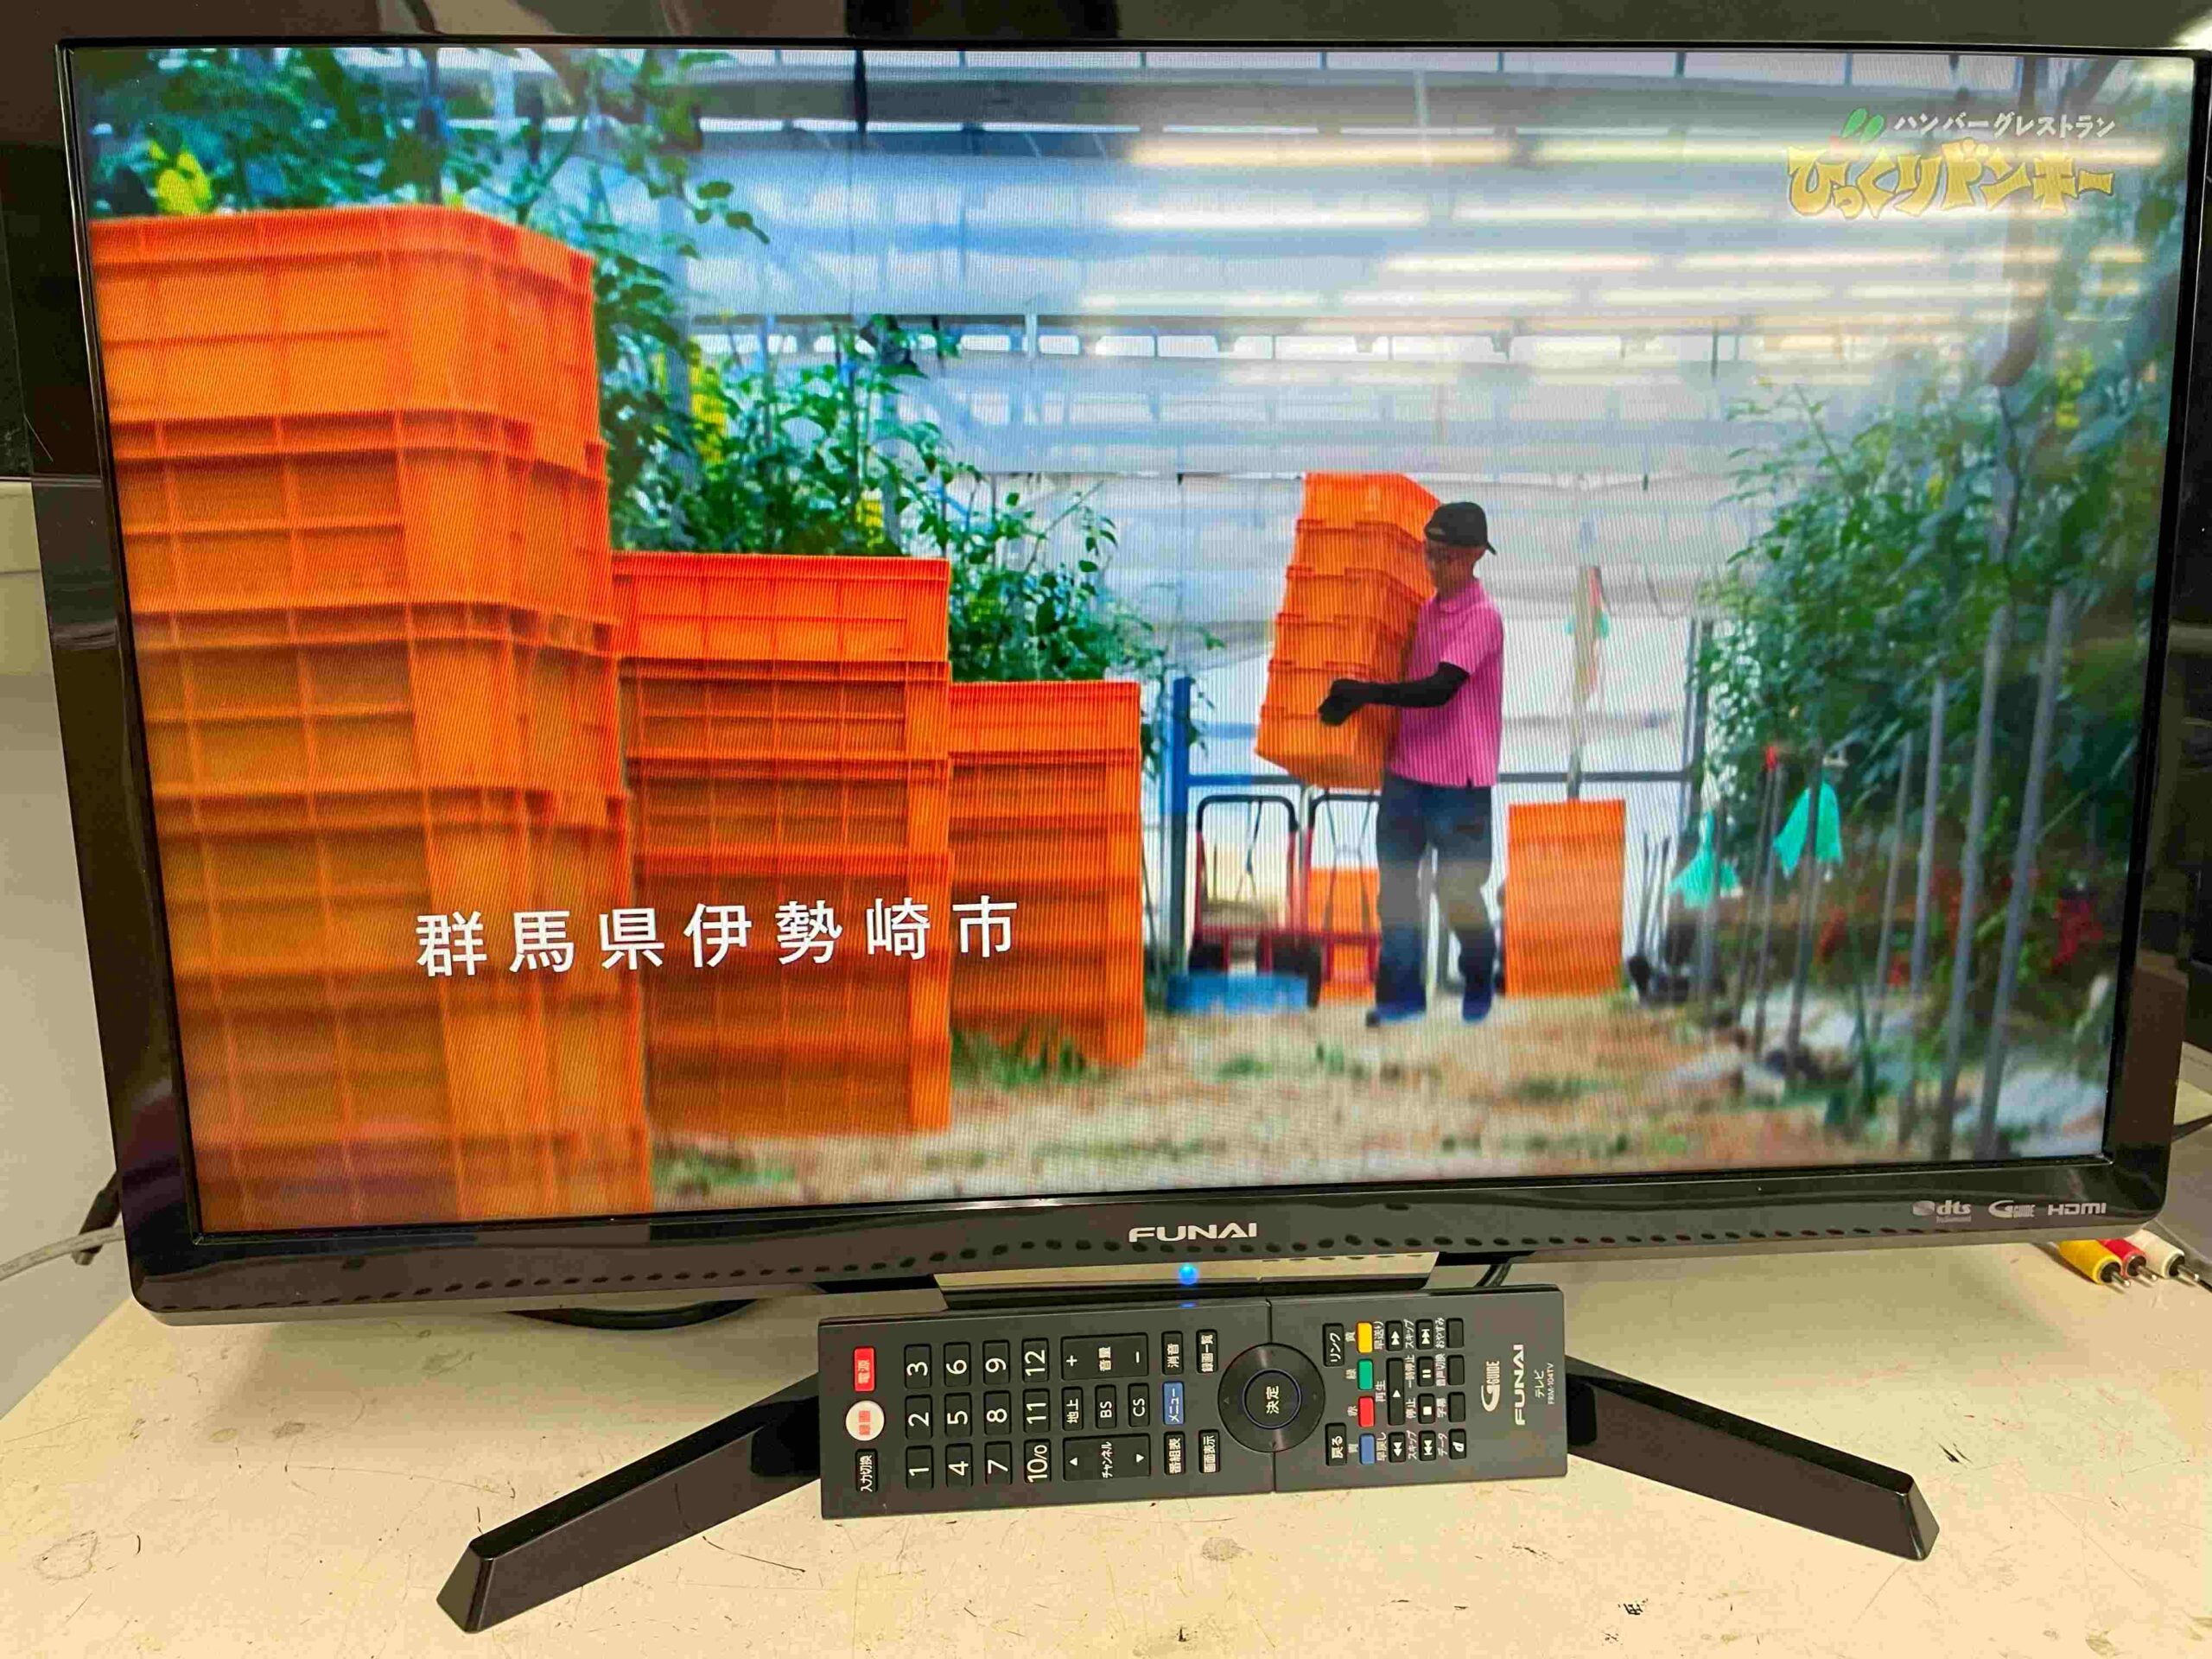 佐賀市のお客様より フナイ 24型 液晶テレビ 2018年製を買取りさせて